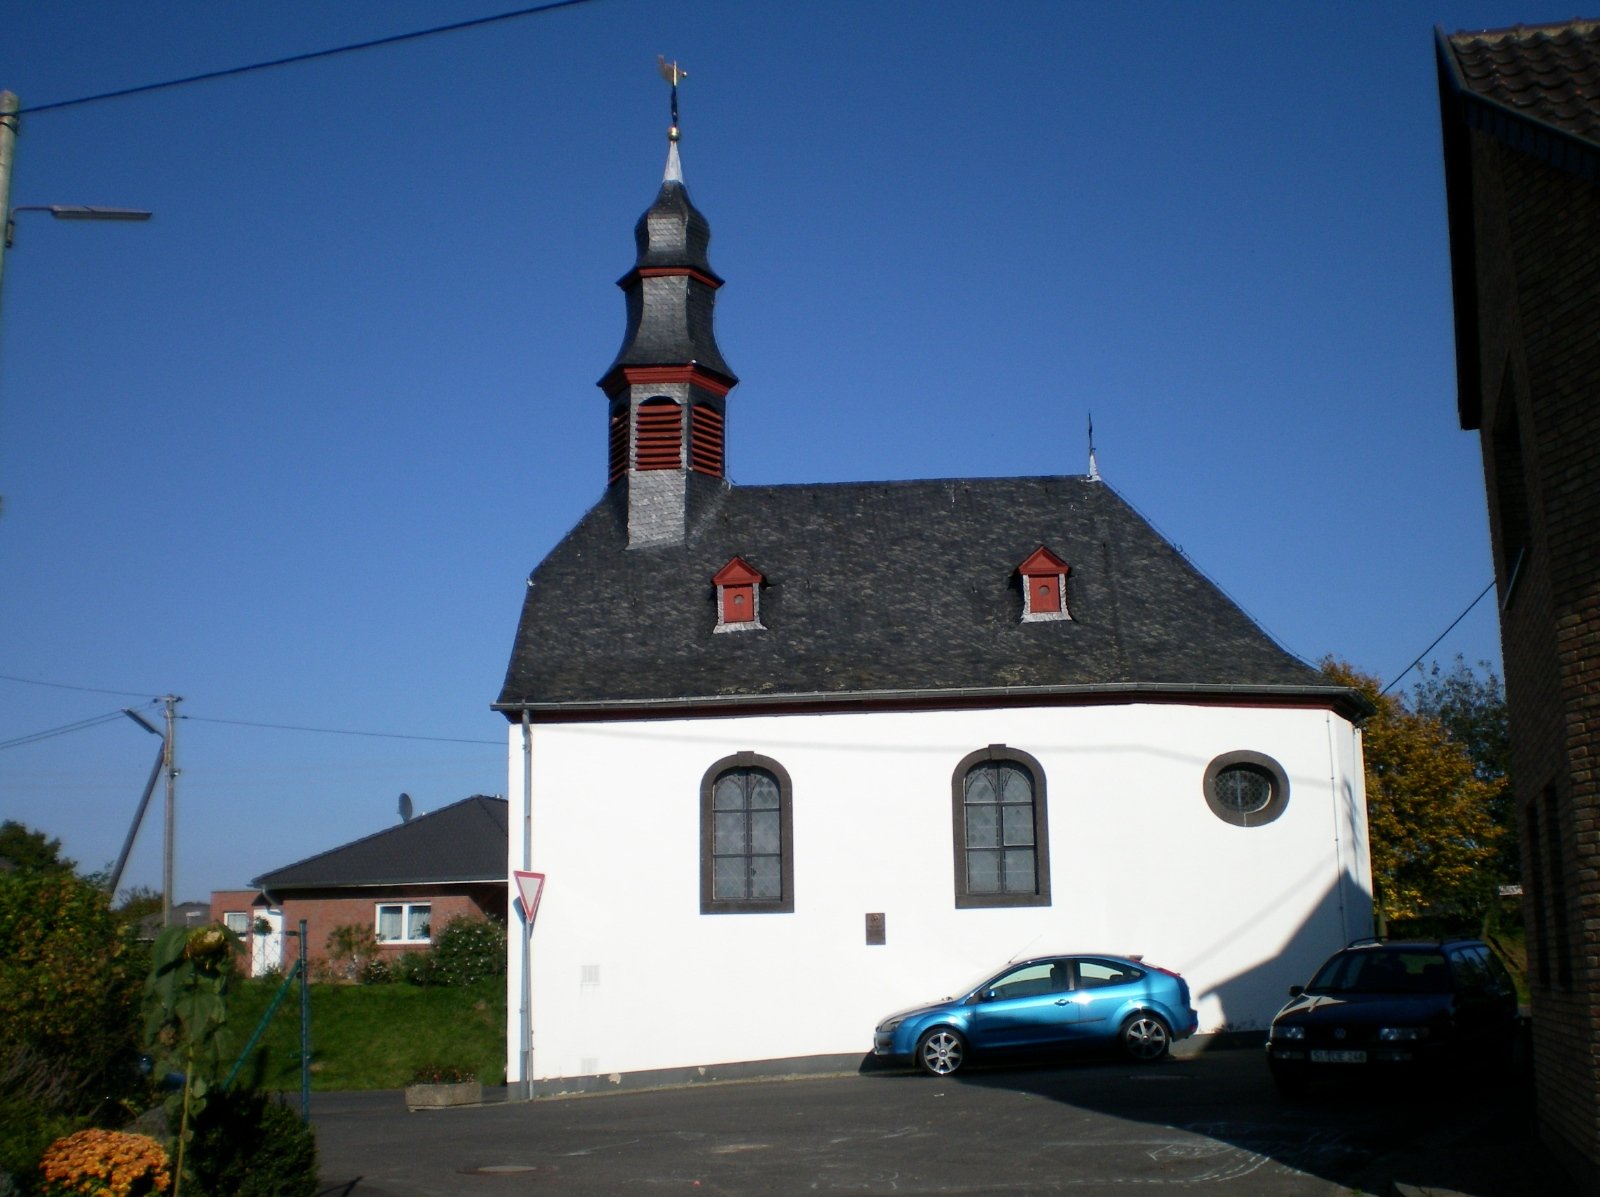 Hz Kapelle Außenansicht (c) Birgit Blum